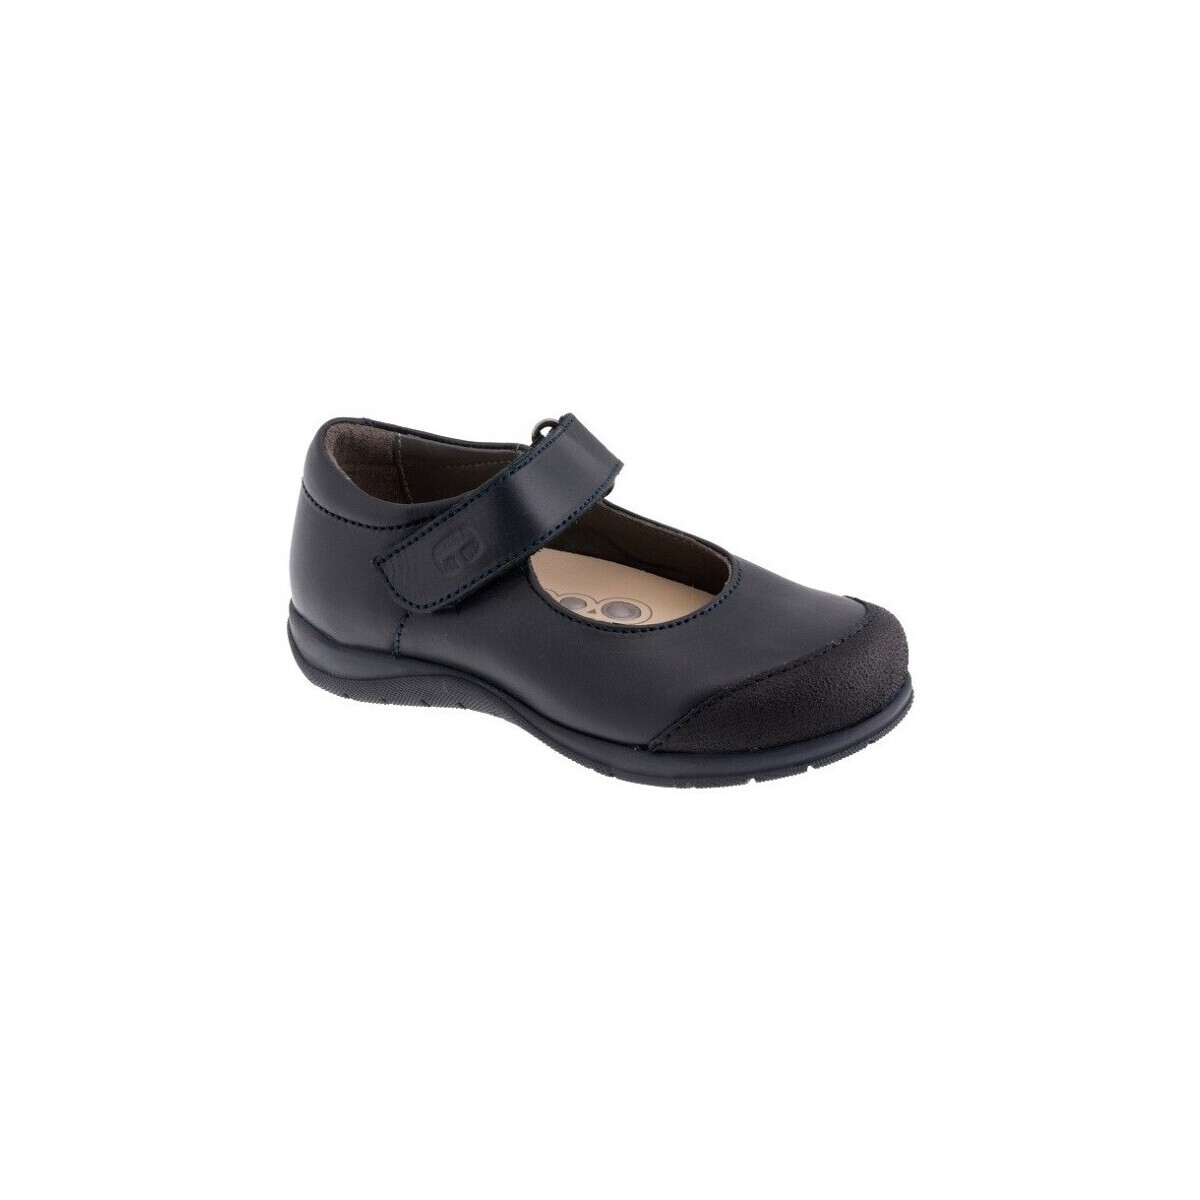 kengät Mokkasiinit Chicco 19475-20 Laivastonsininen